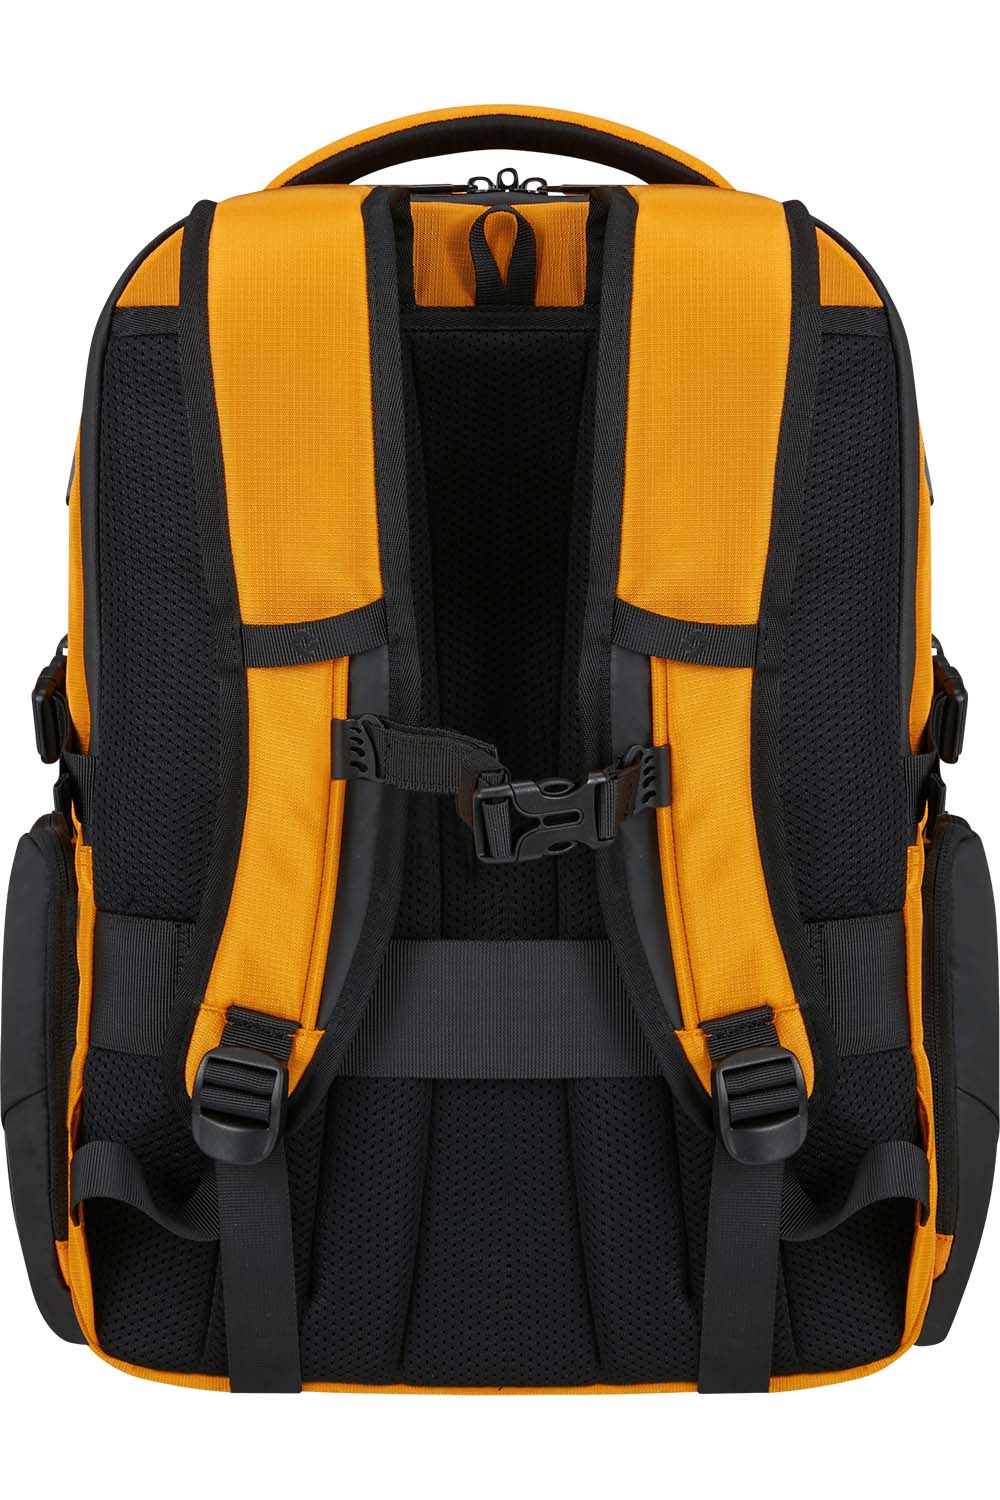 Samsonite Biz2go Backpack daytrip תיק גב למחשב נייד ולנסיעות 15.6"